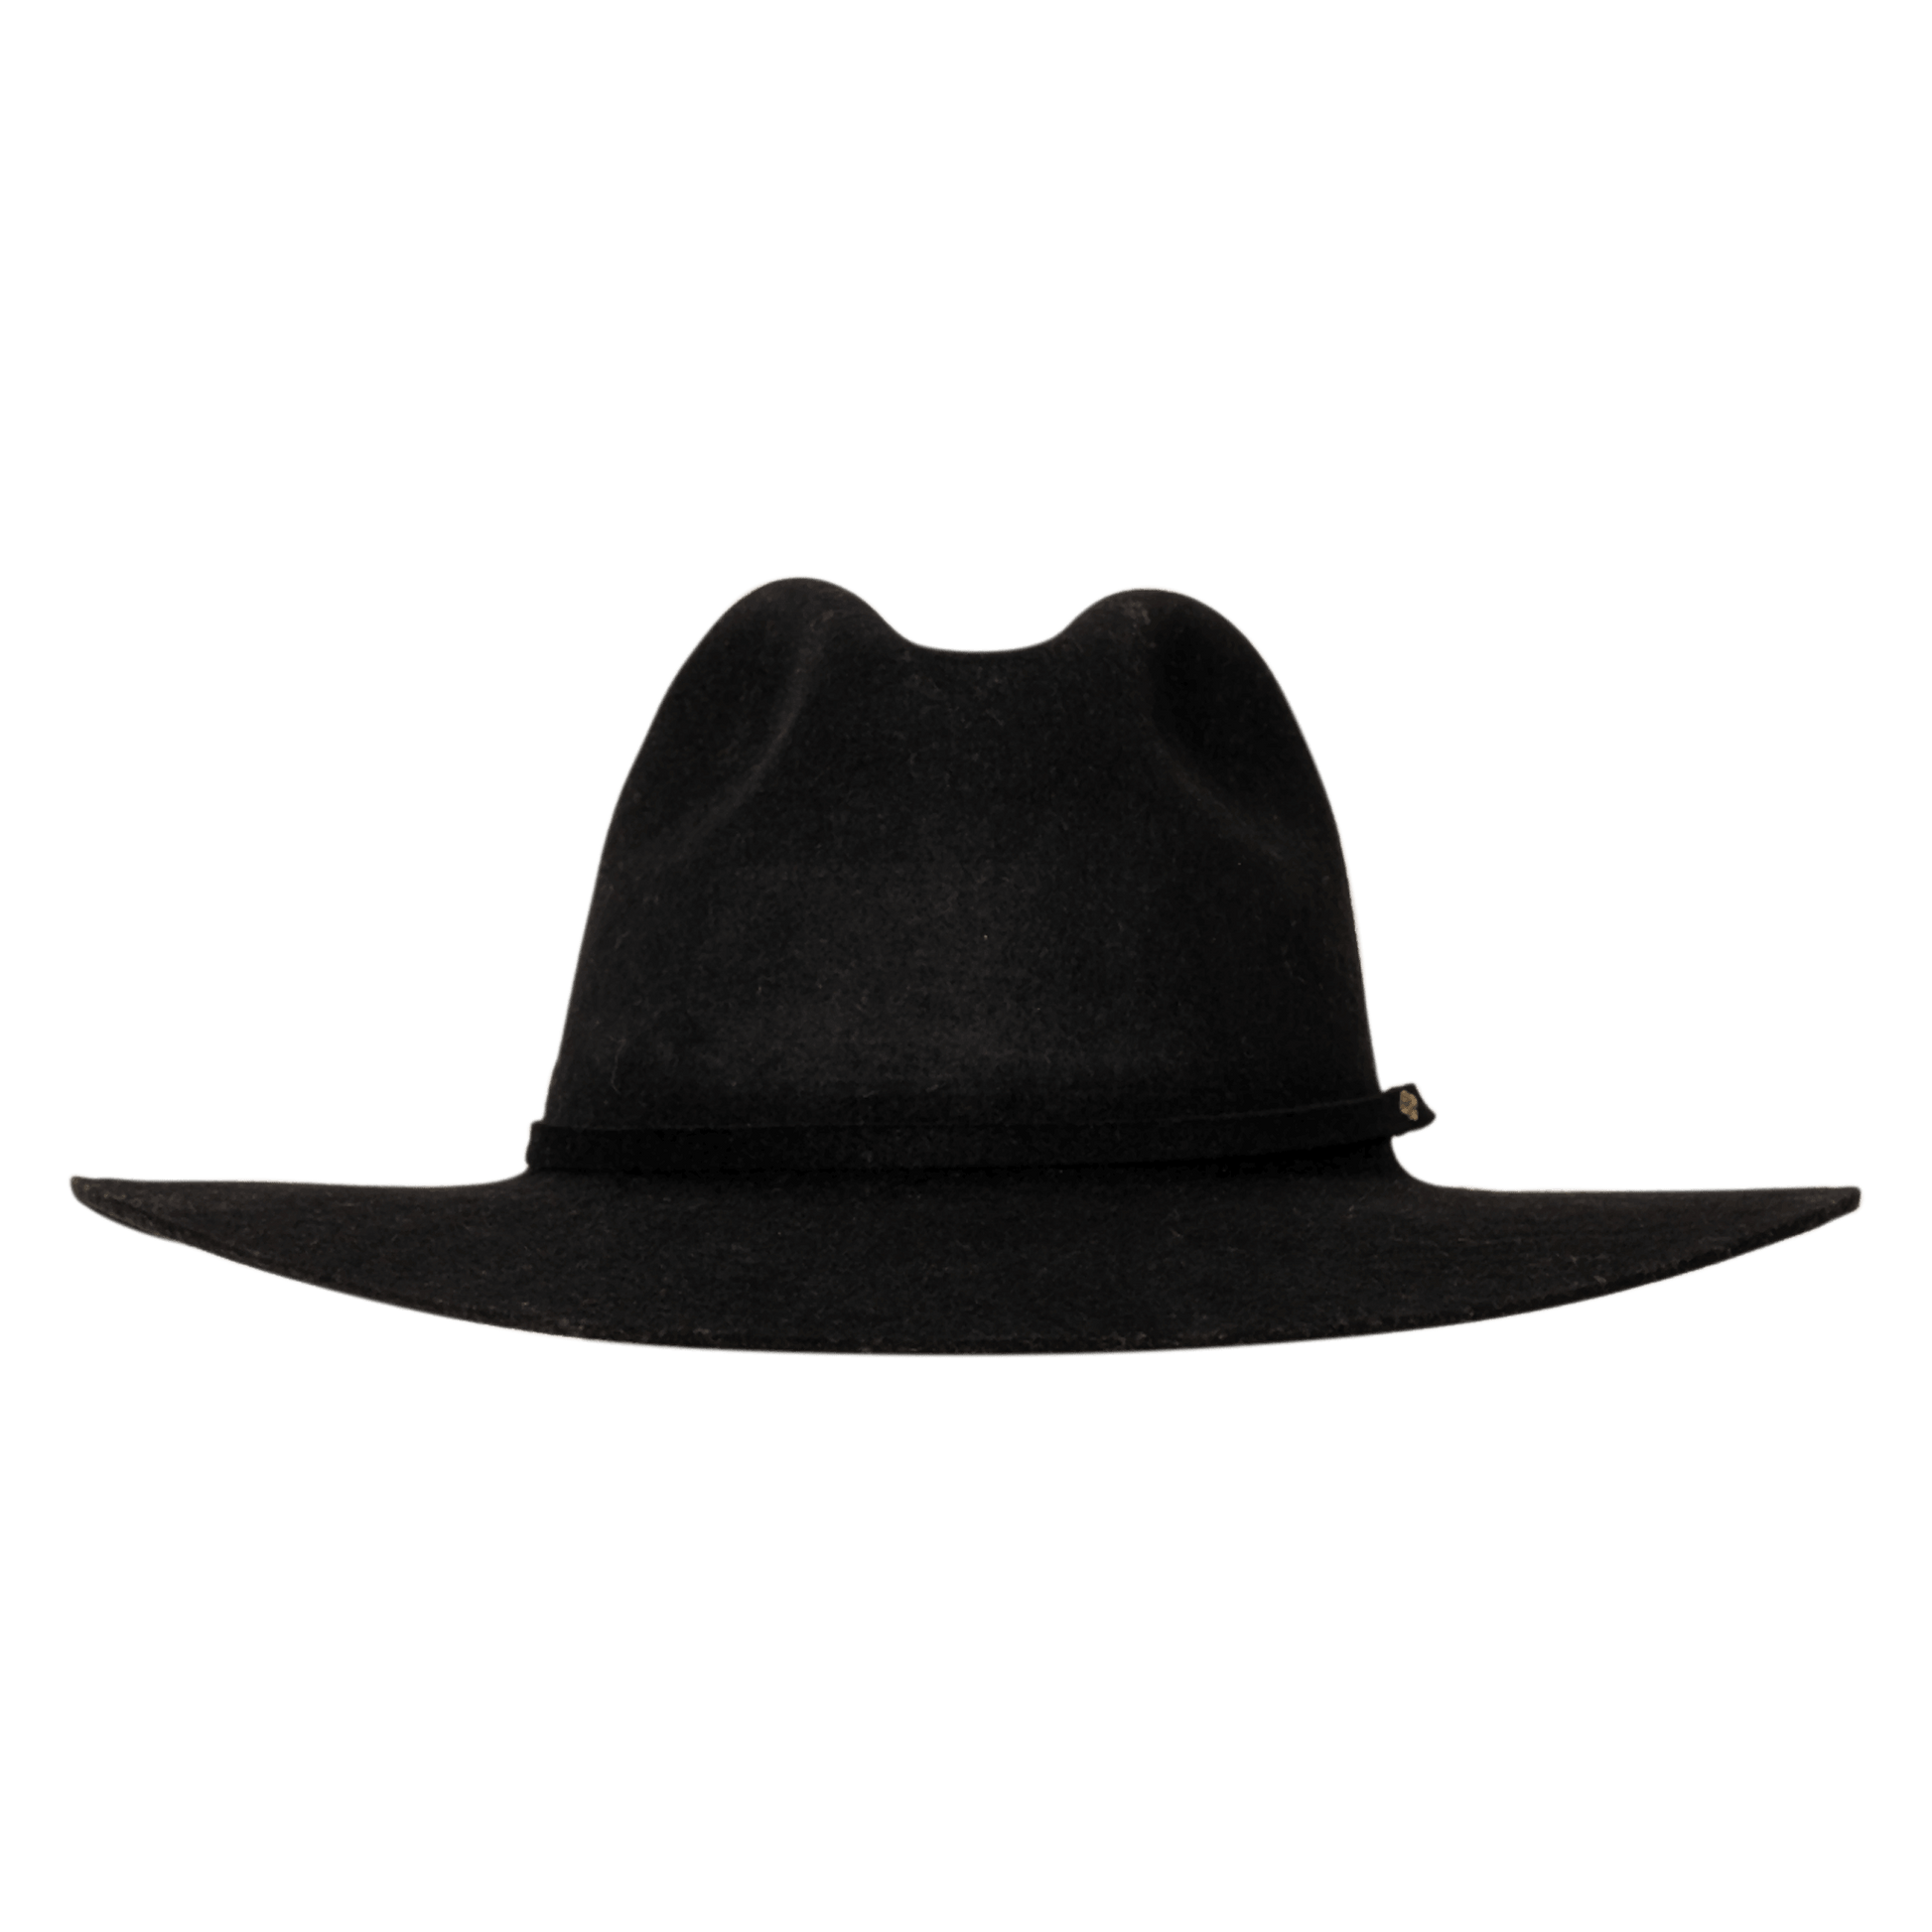    Sombrero-fedora-para-hombre-negro